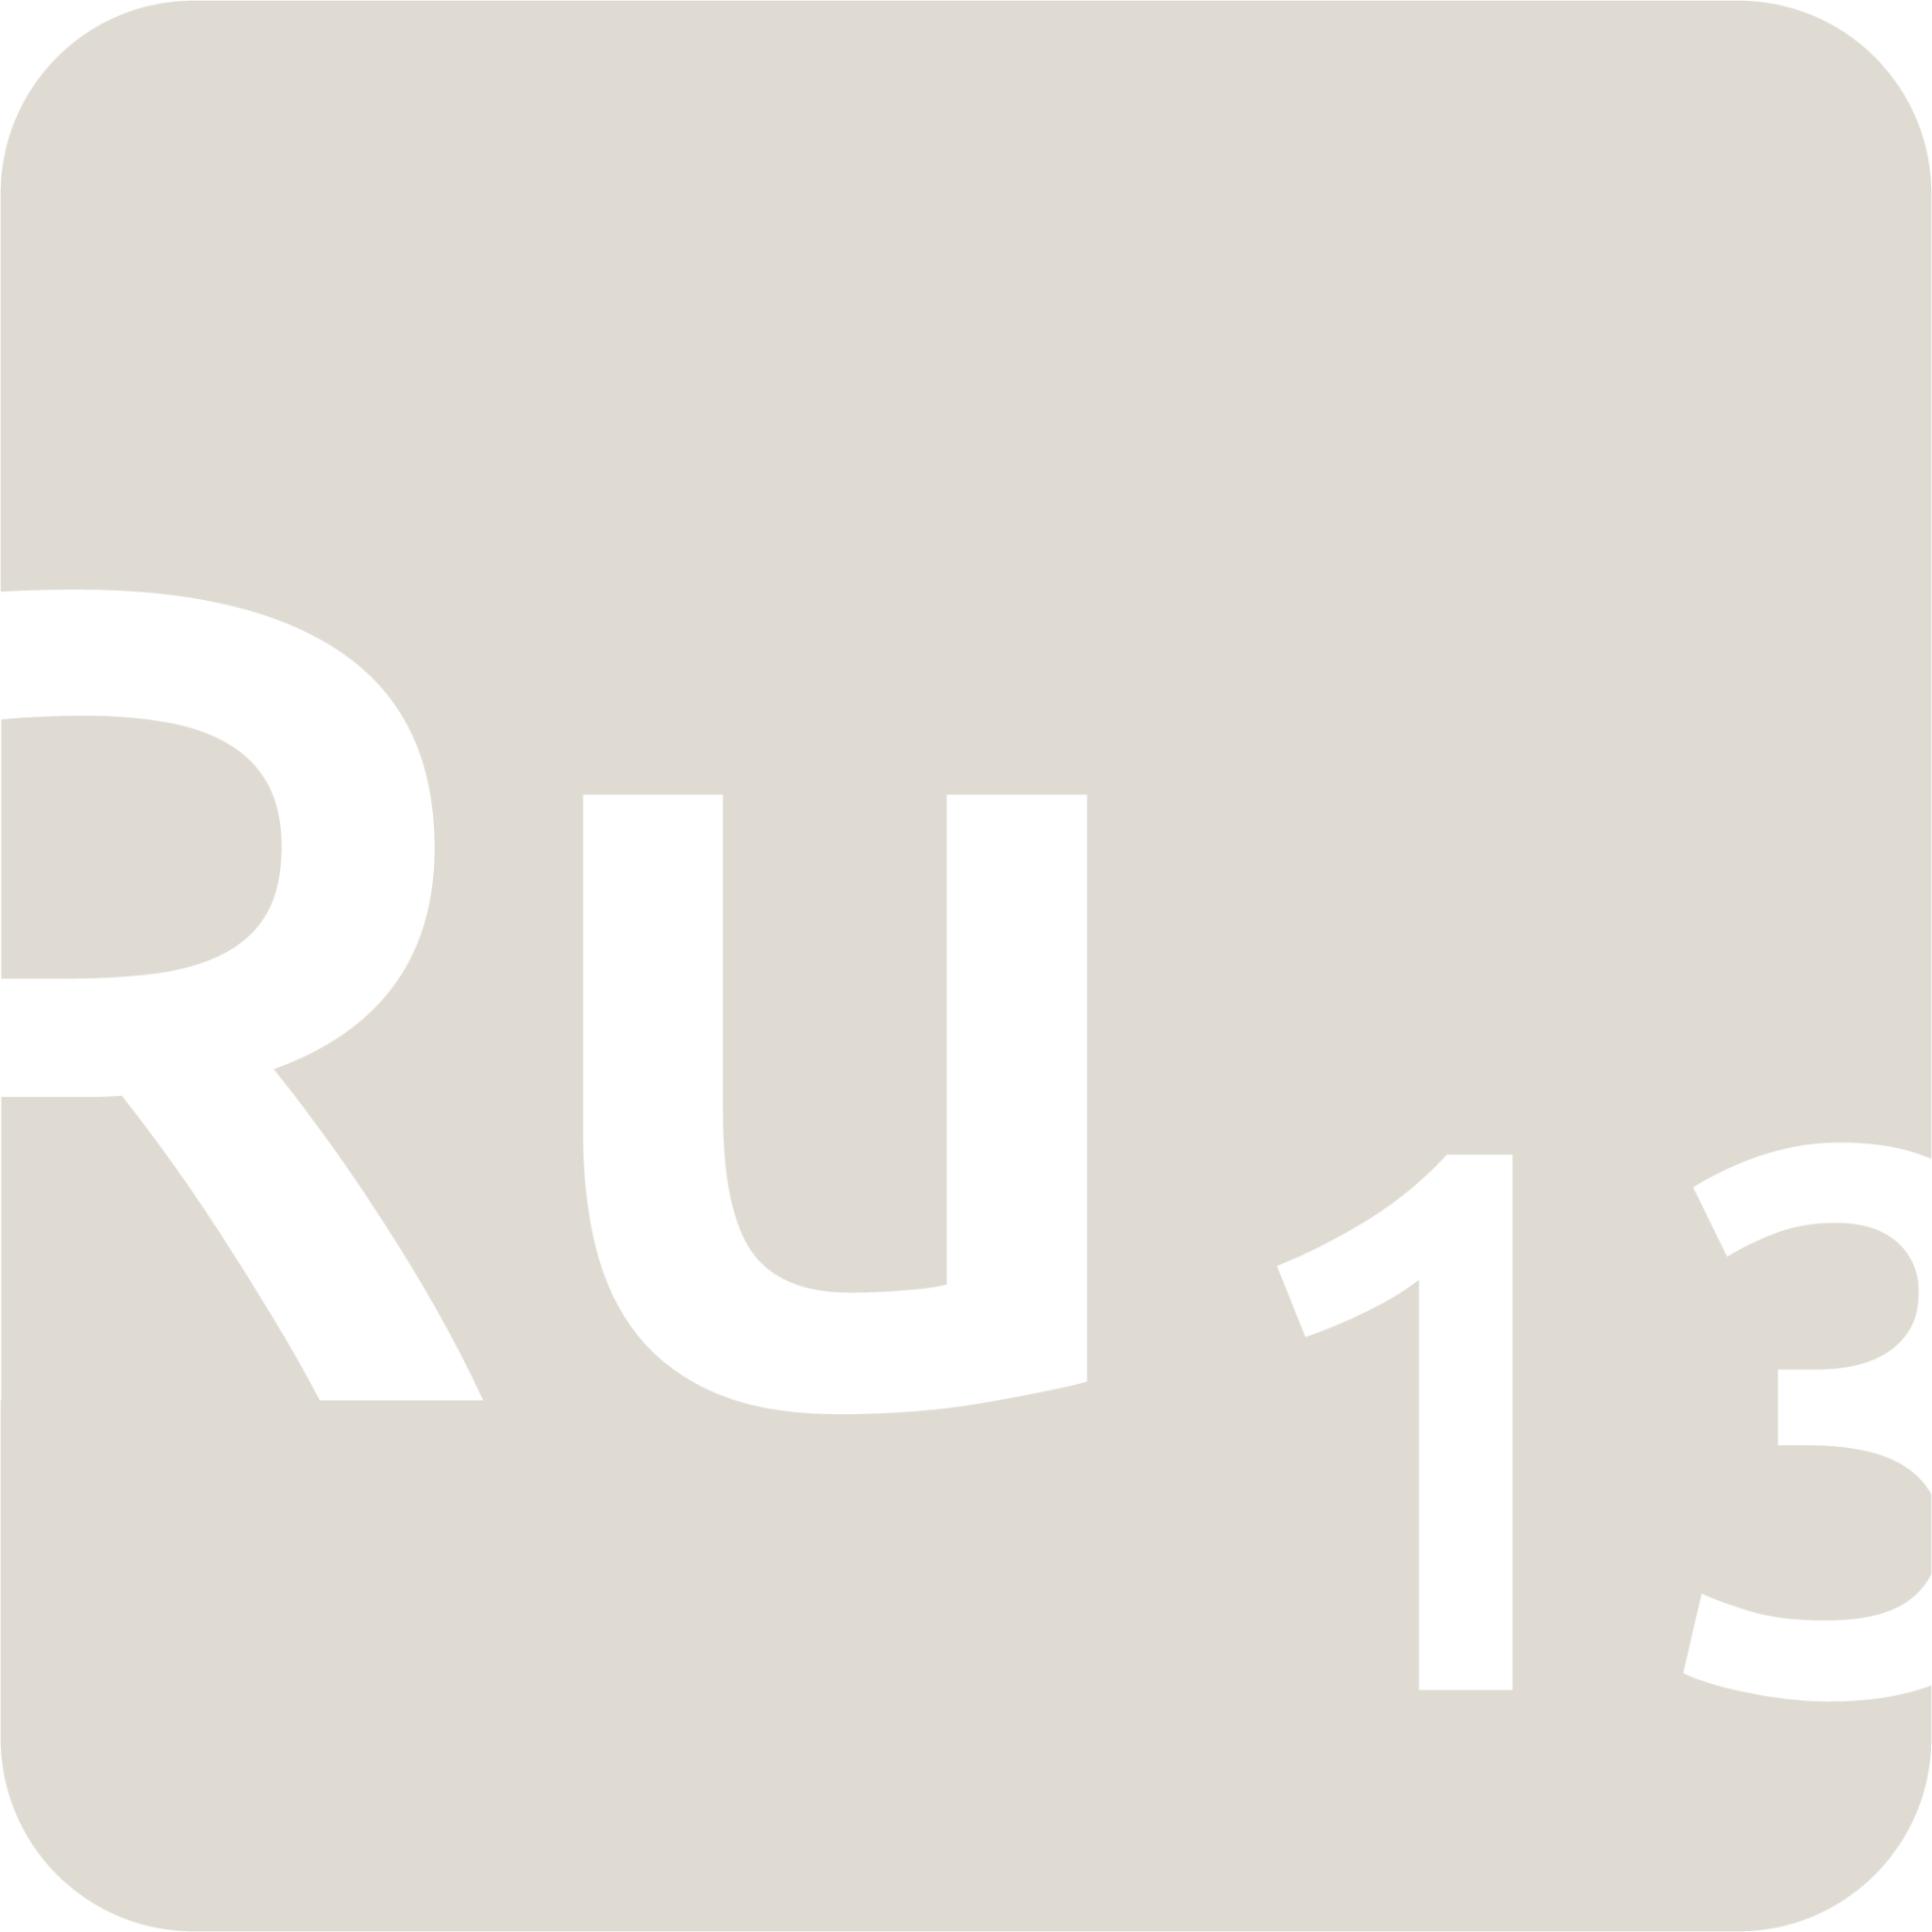 indicator keyboard Ru 13 icon